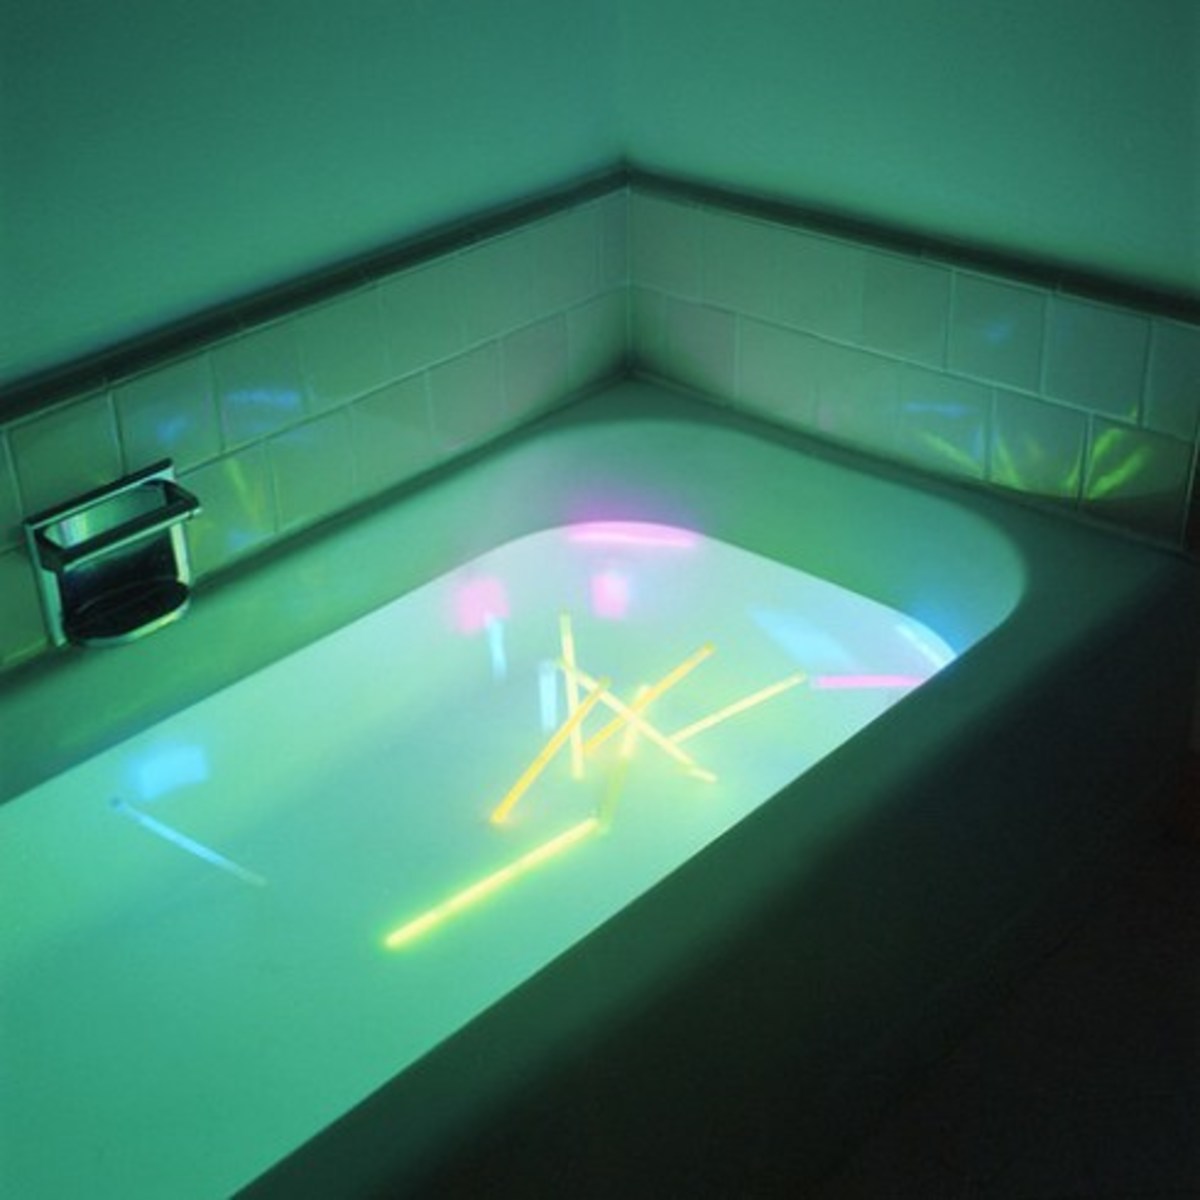 glow sticks in the bath!